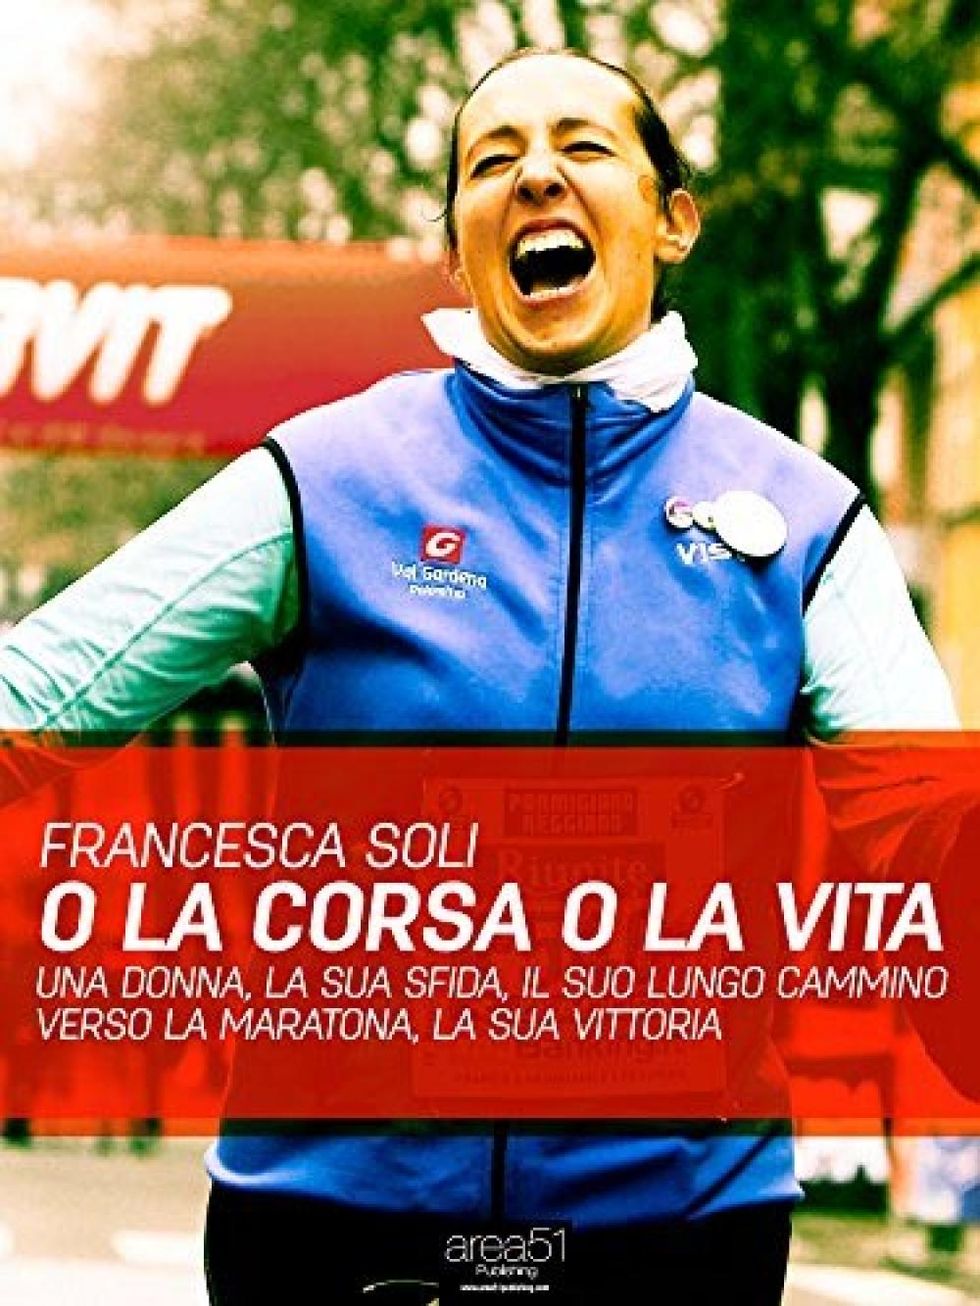 Cover di “O la corsa o la vita” di Francesca Soli - Area51 Publishing